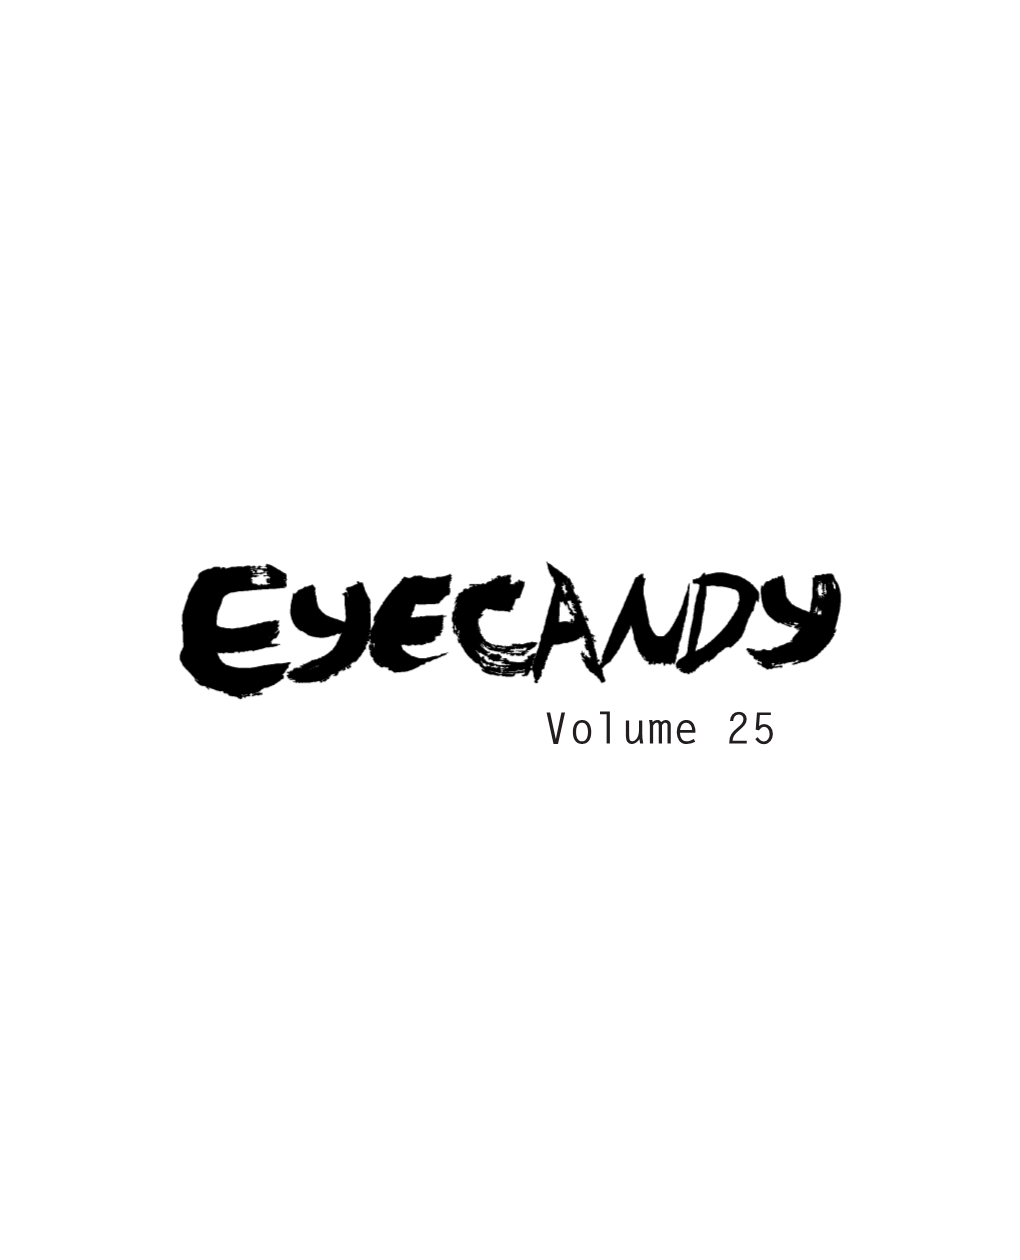 Volume 25 Eyecandy Staff